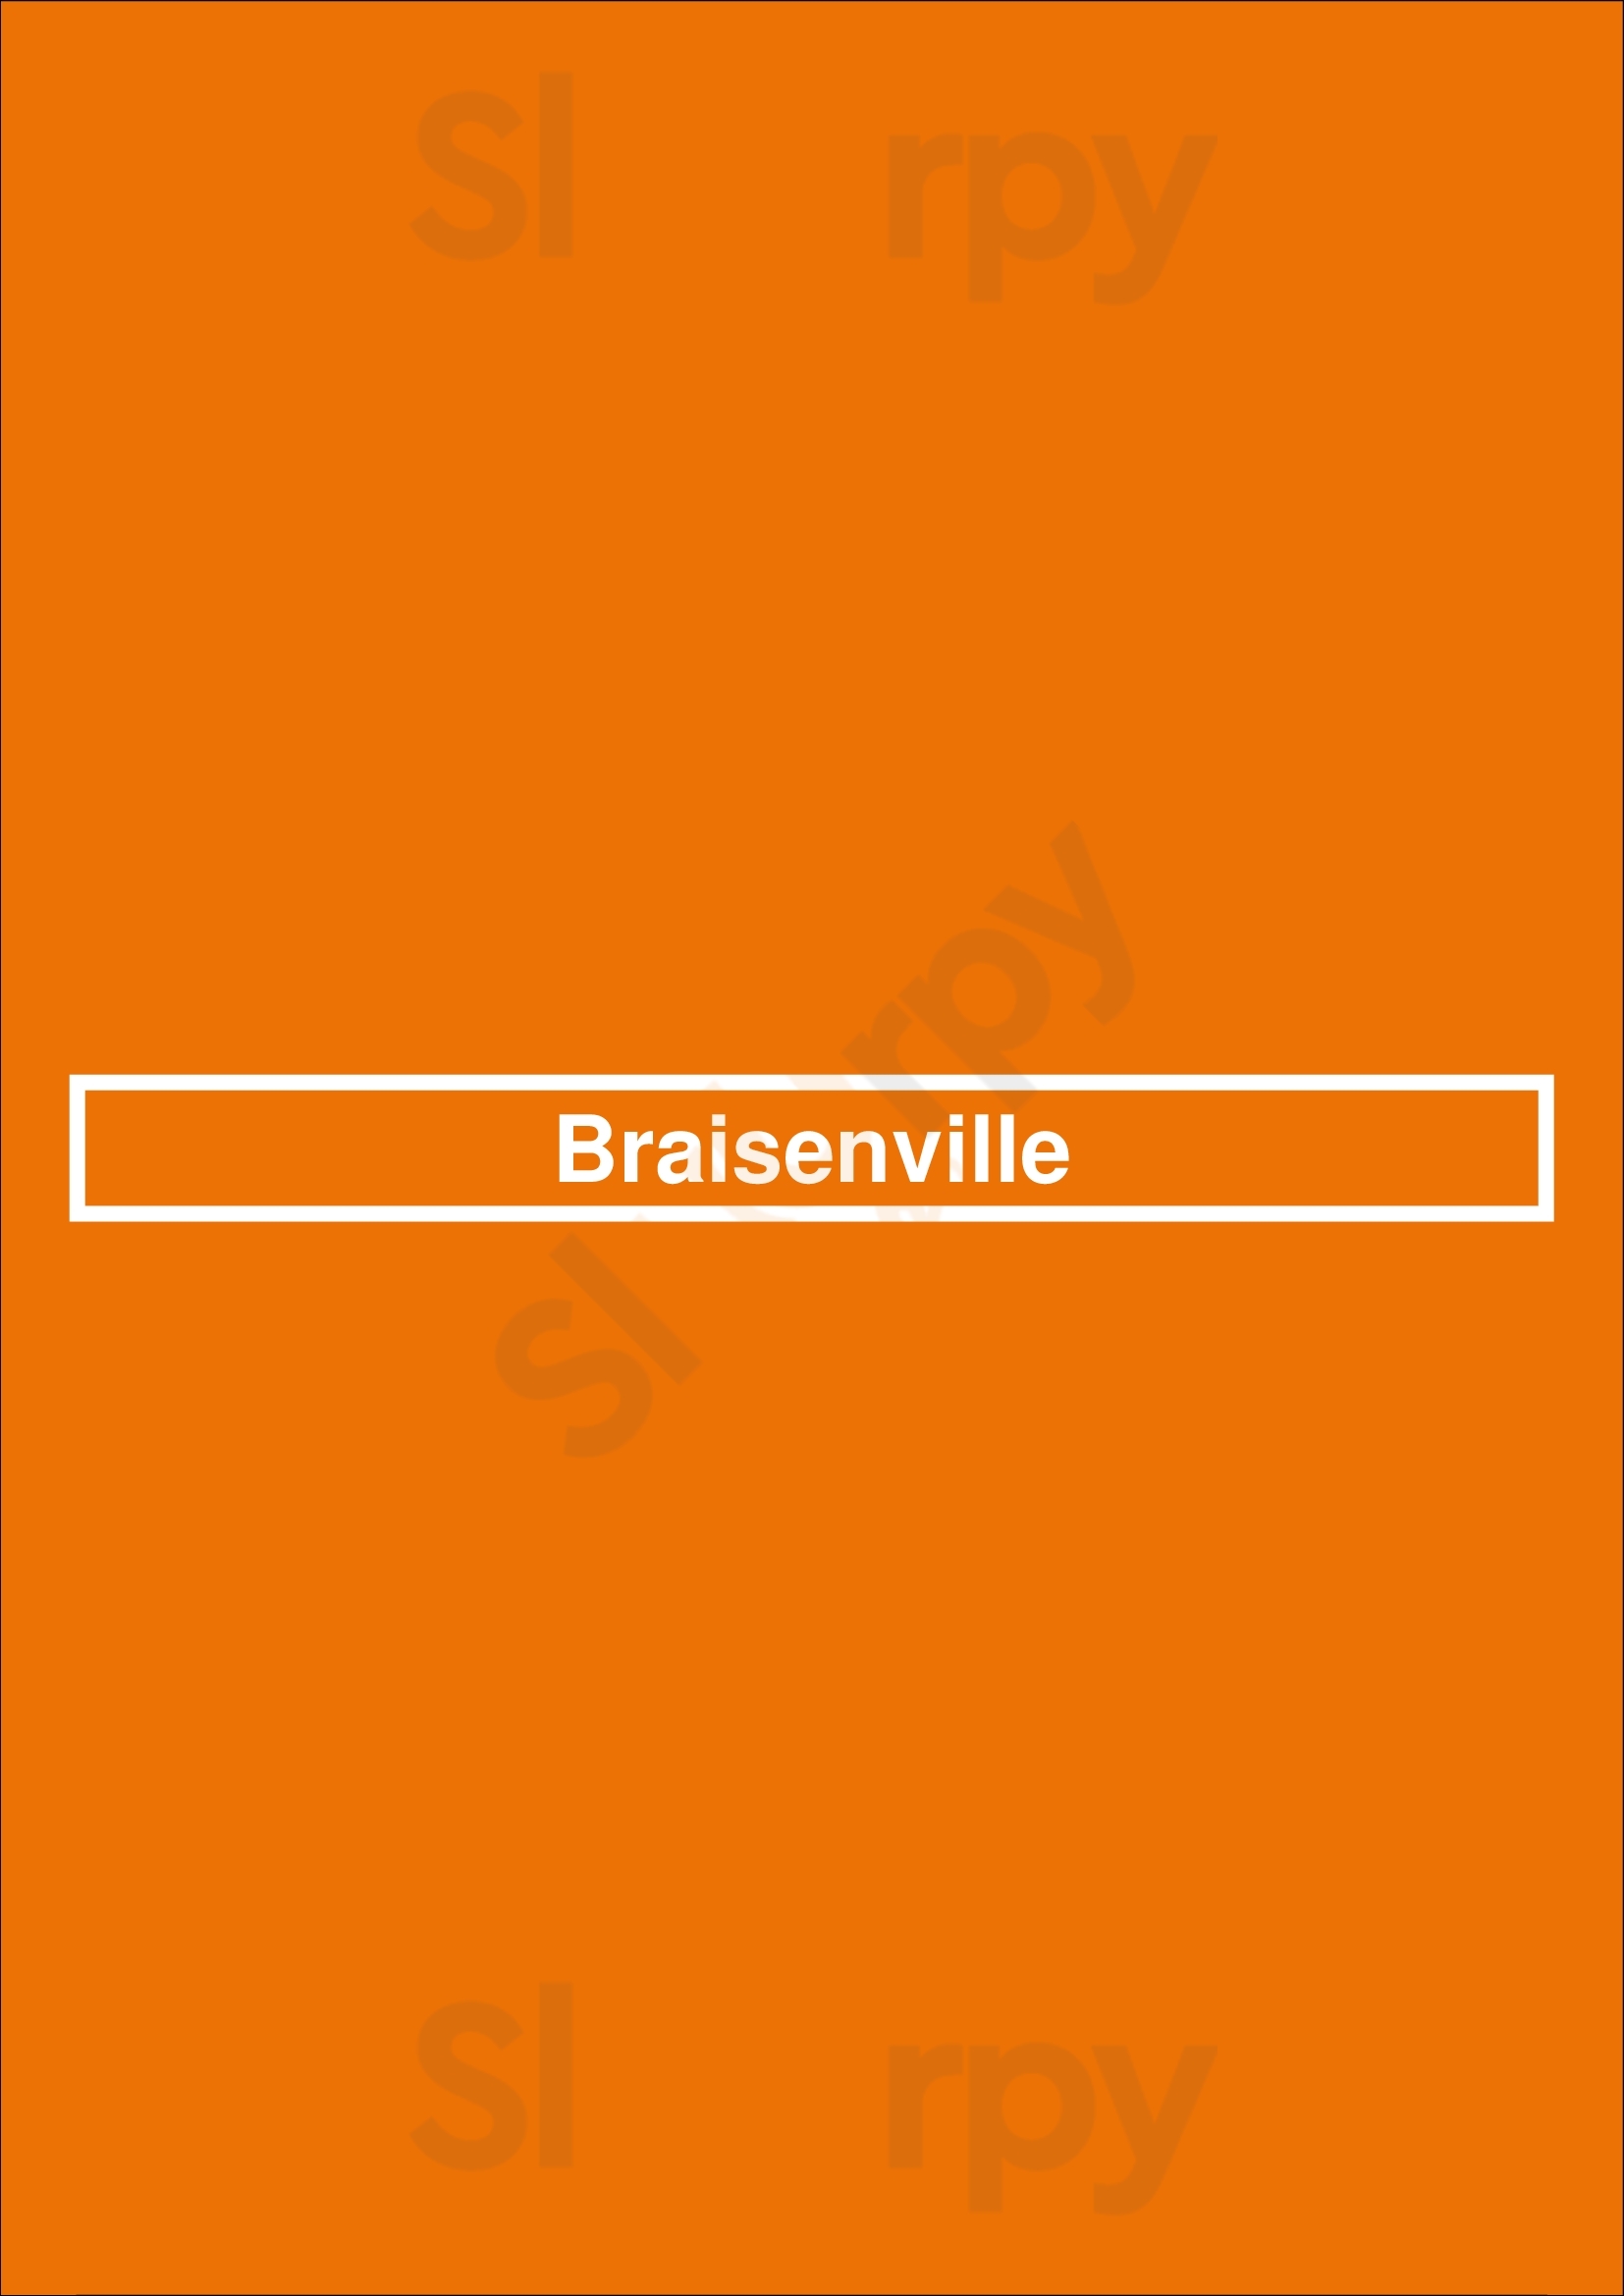 Braisenville Paris Menu - 1